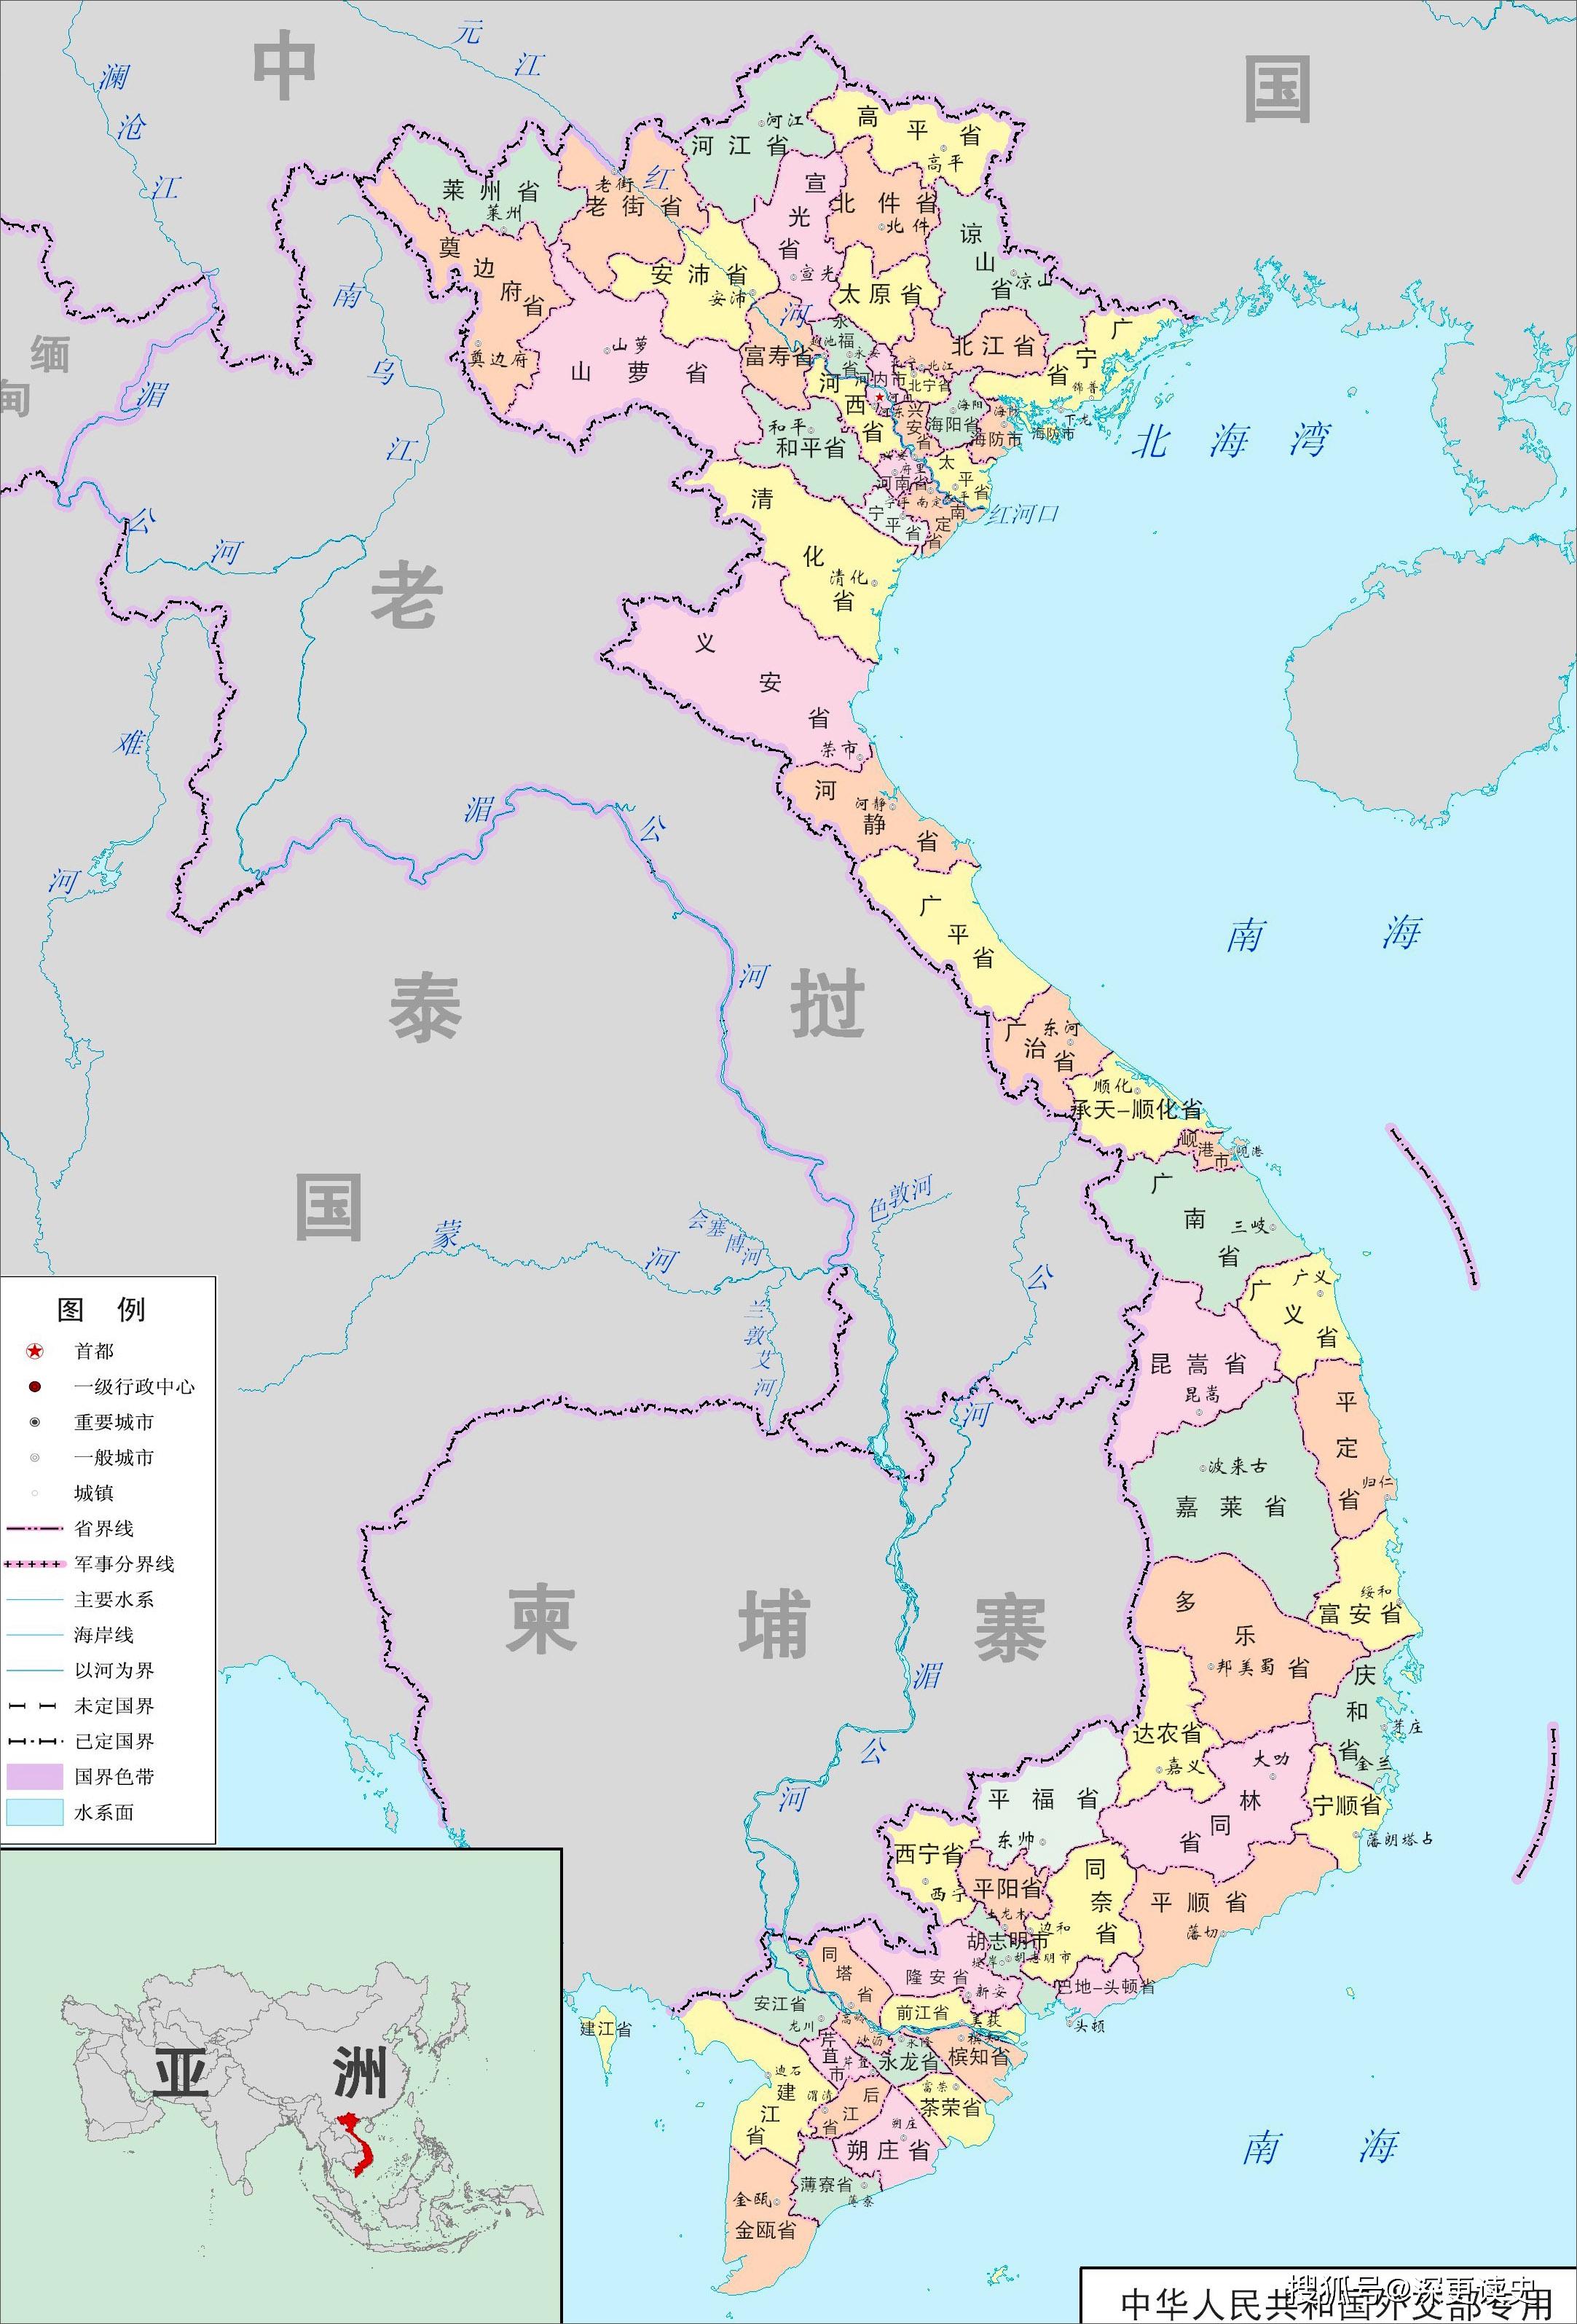 阮朝行政区划地图图片